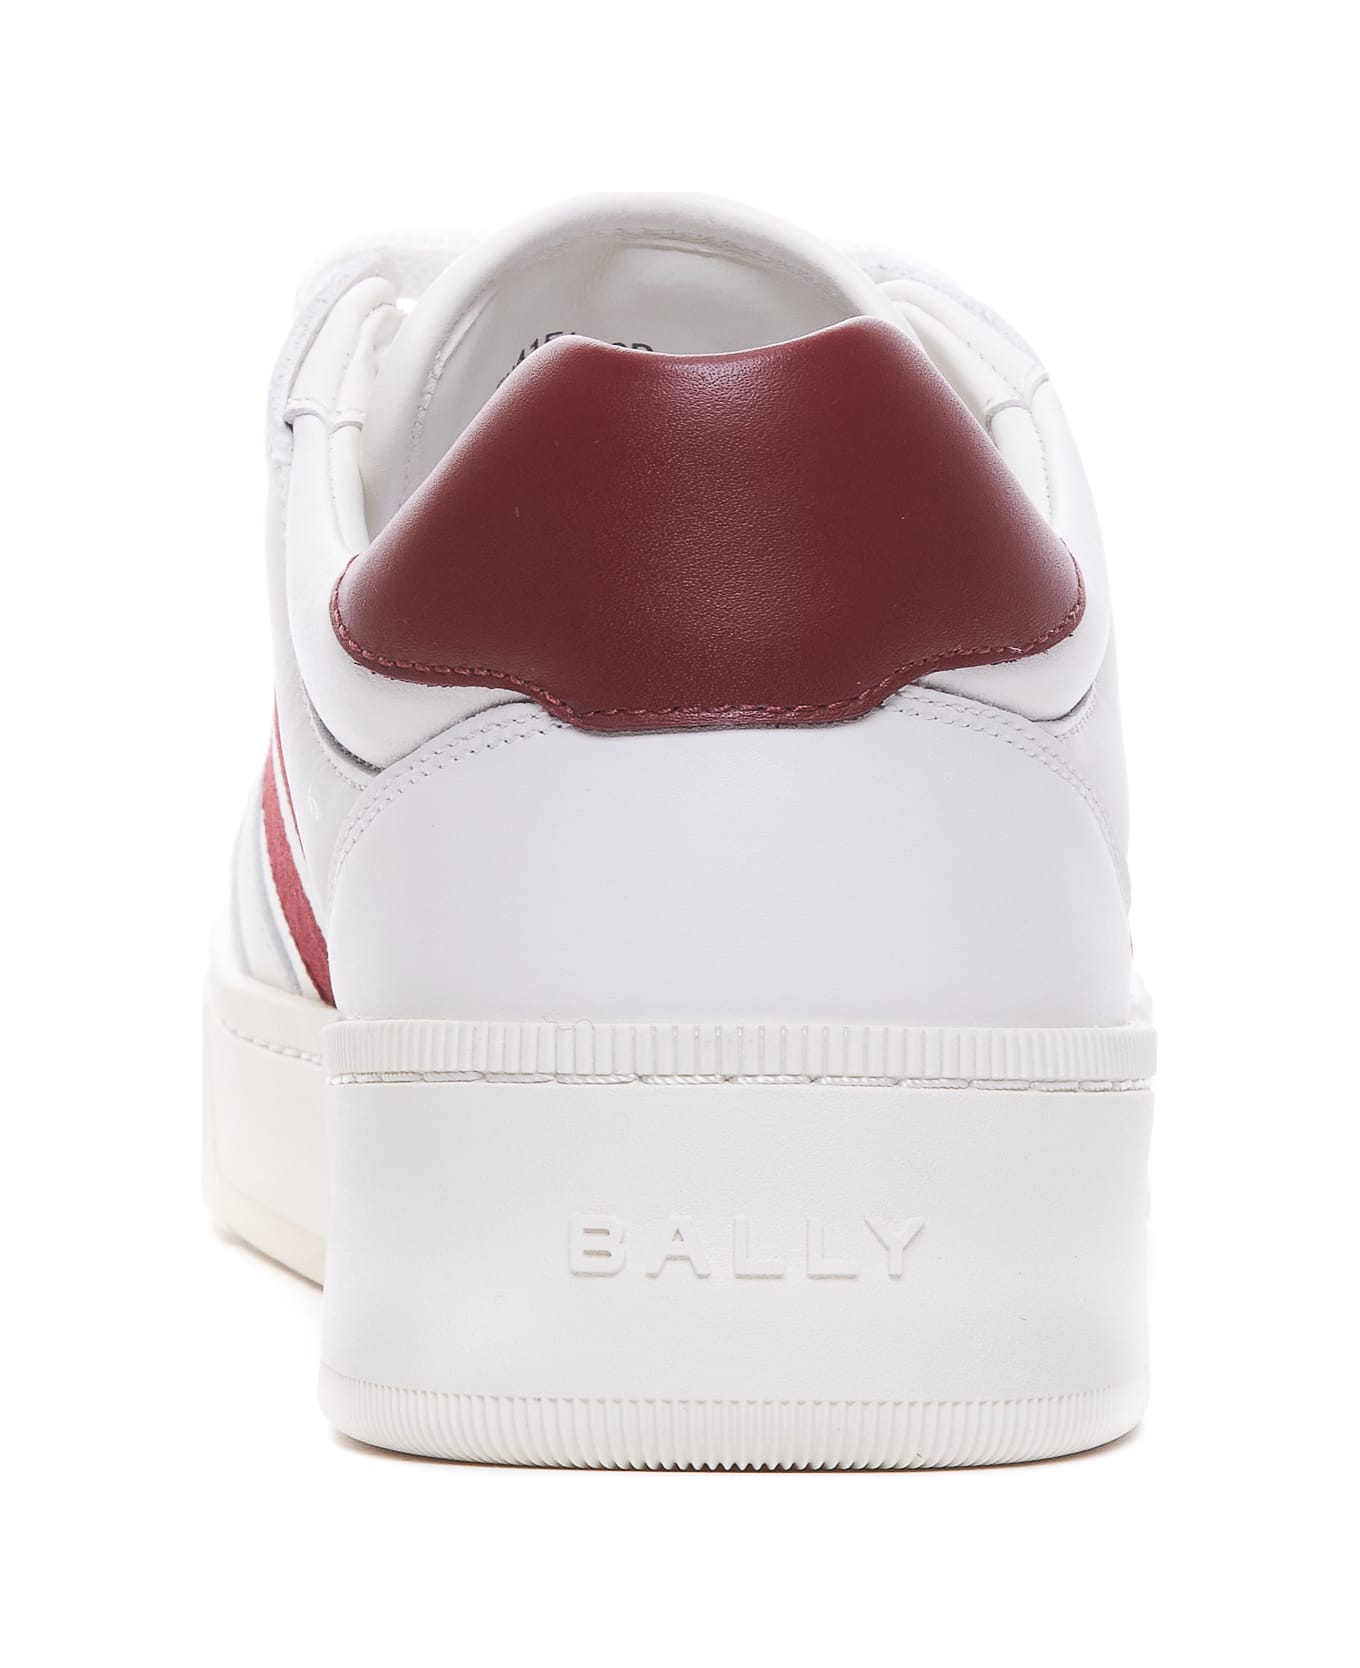 Bally Rebby Sneakers - White スニーカー